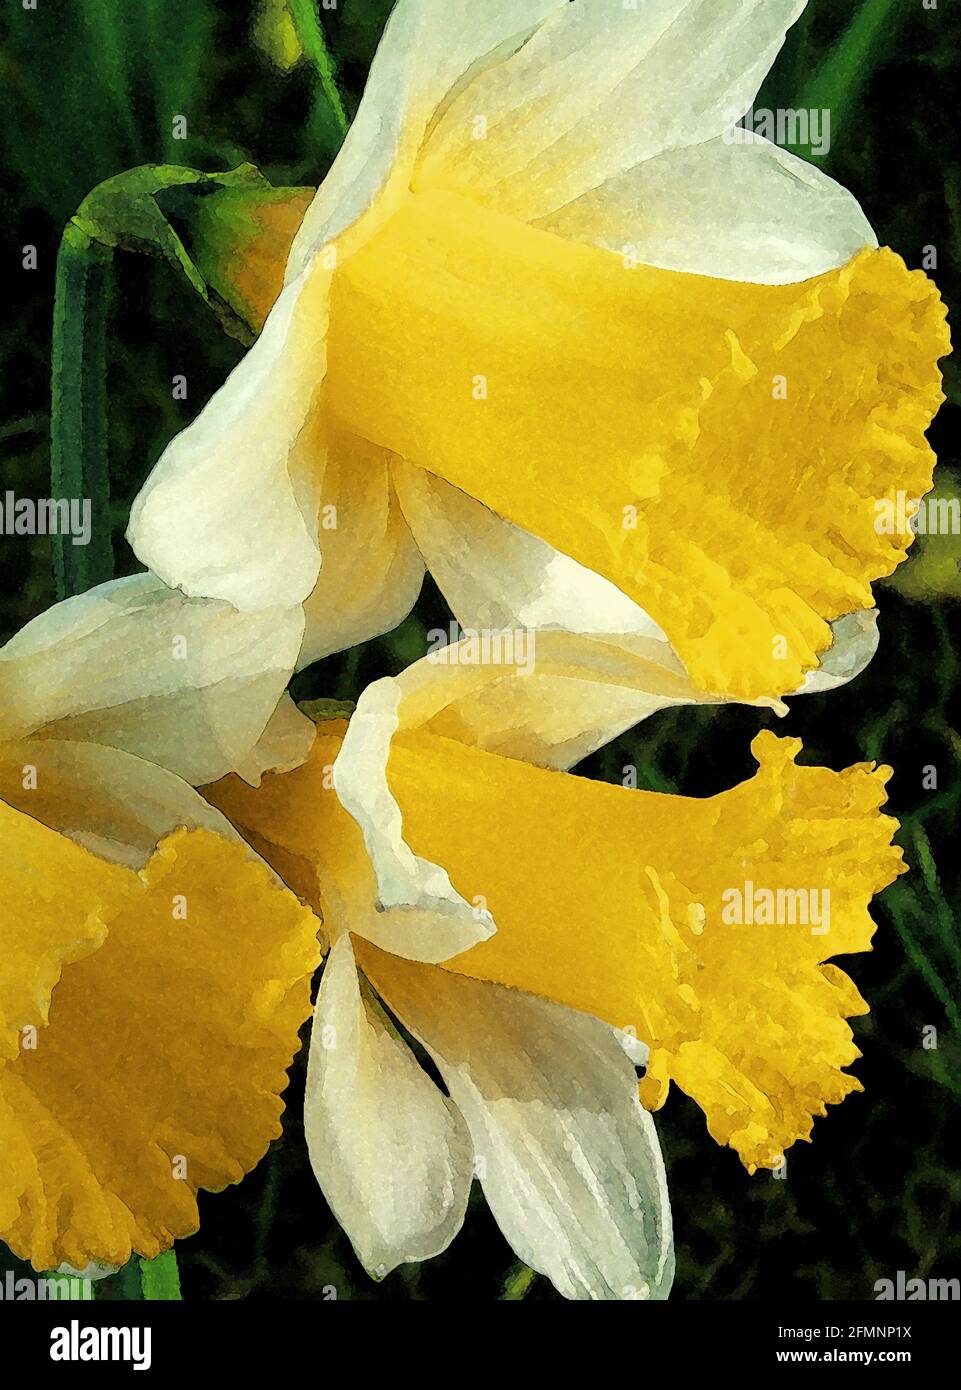 Daffodil (Narcissus 'February Silver') eine von 42 ikonischen Bildern englischer Gartenblumen, Wildblumen und ländlicher Landschaften. Stockfoto